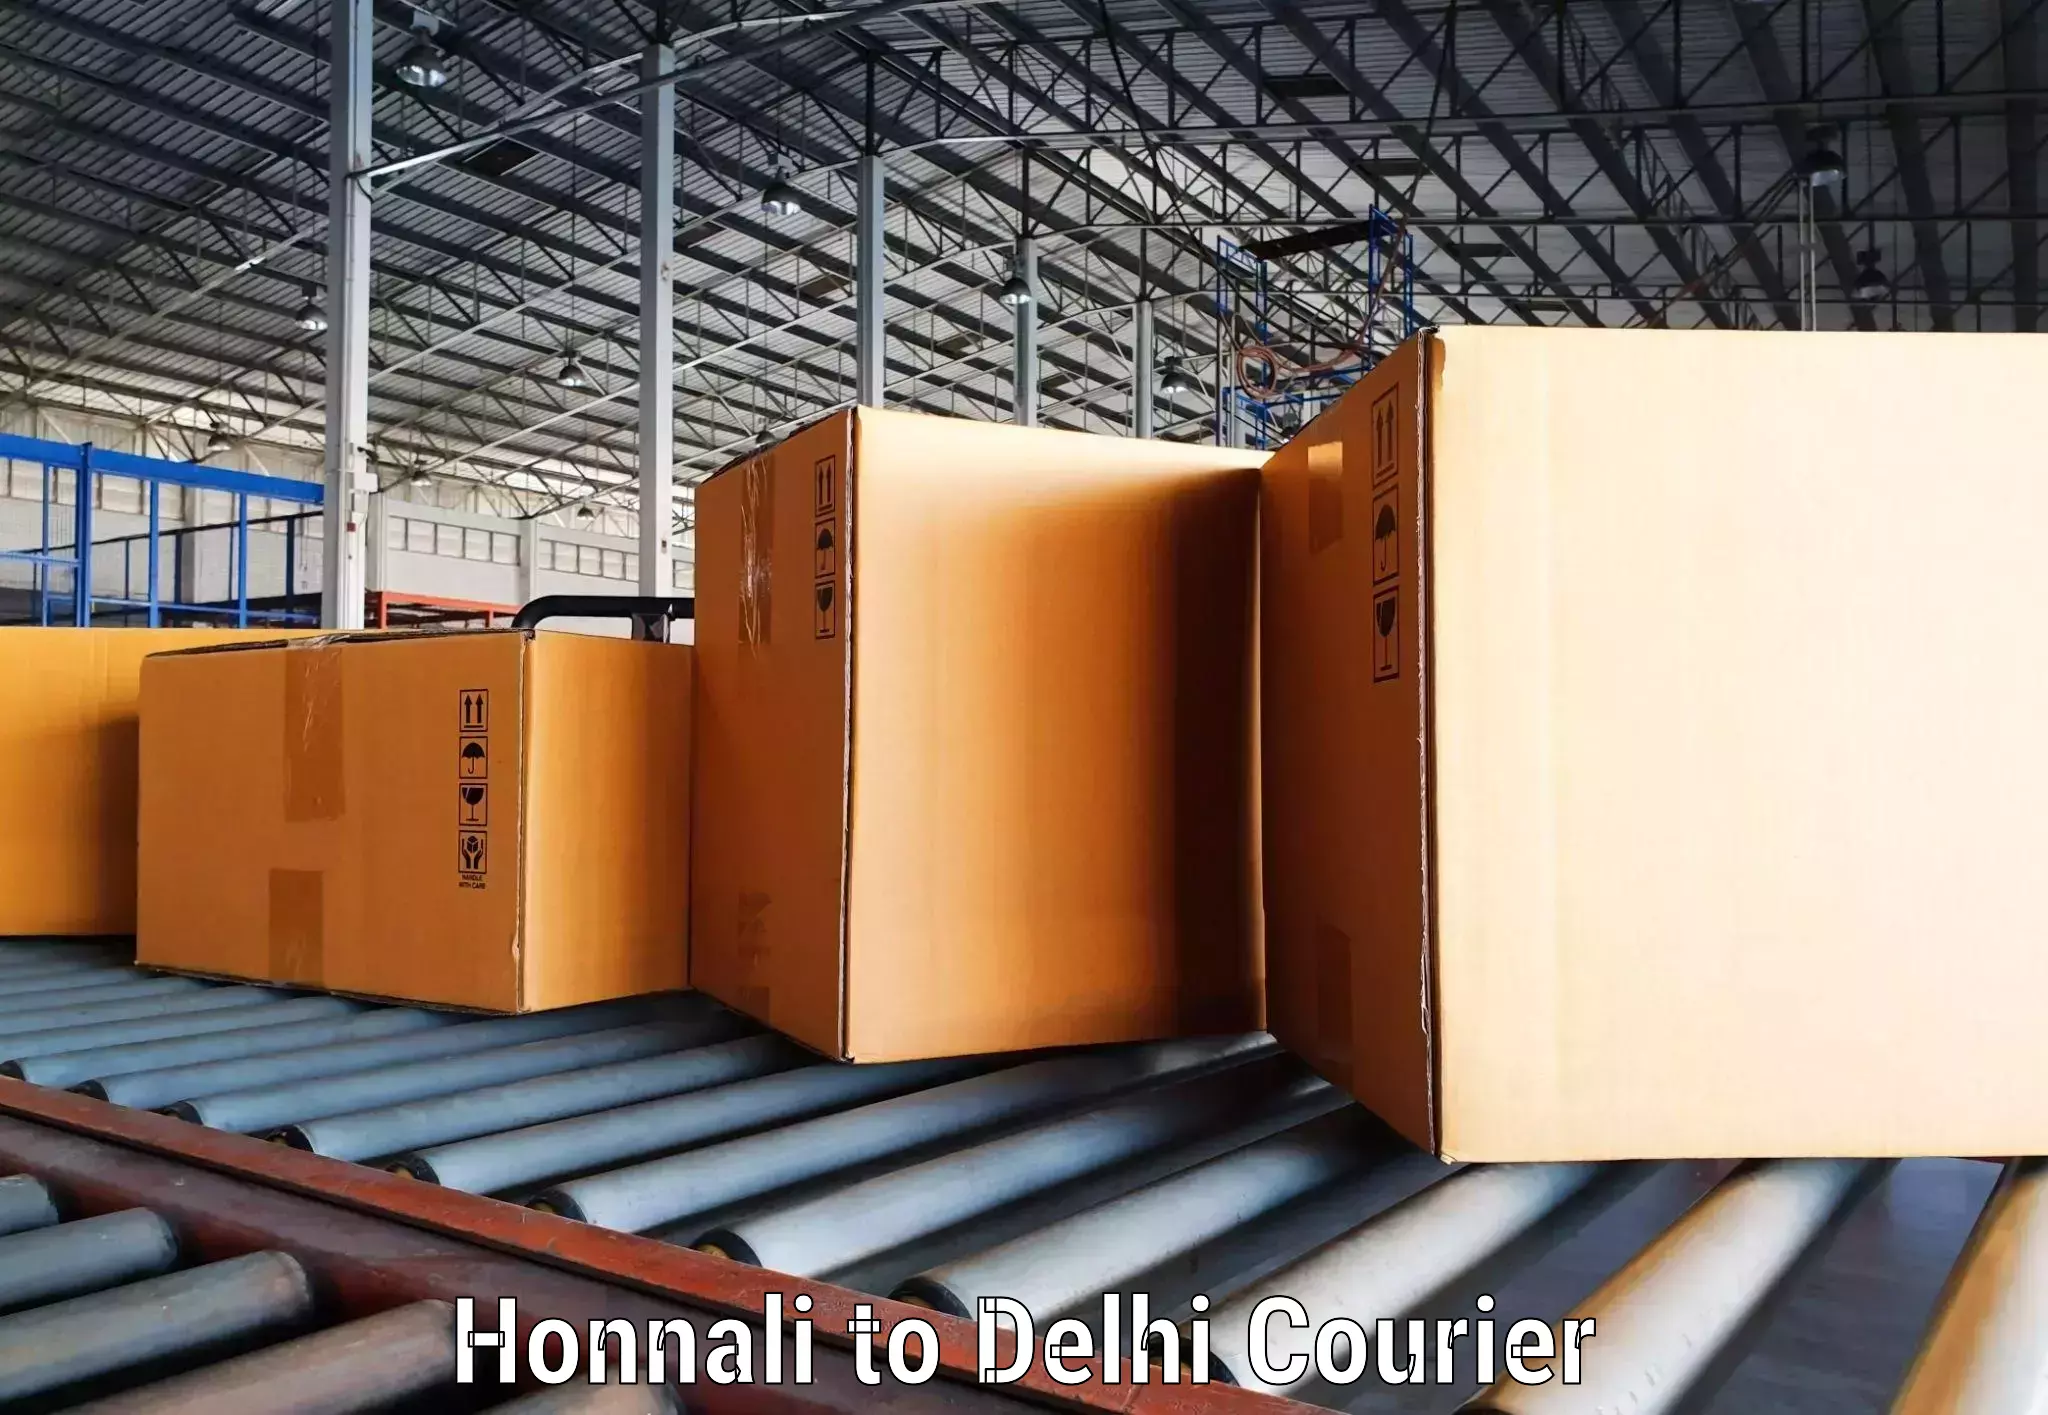 Courier service comparison Honnali to Jamia Millia Islamia New Delhi